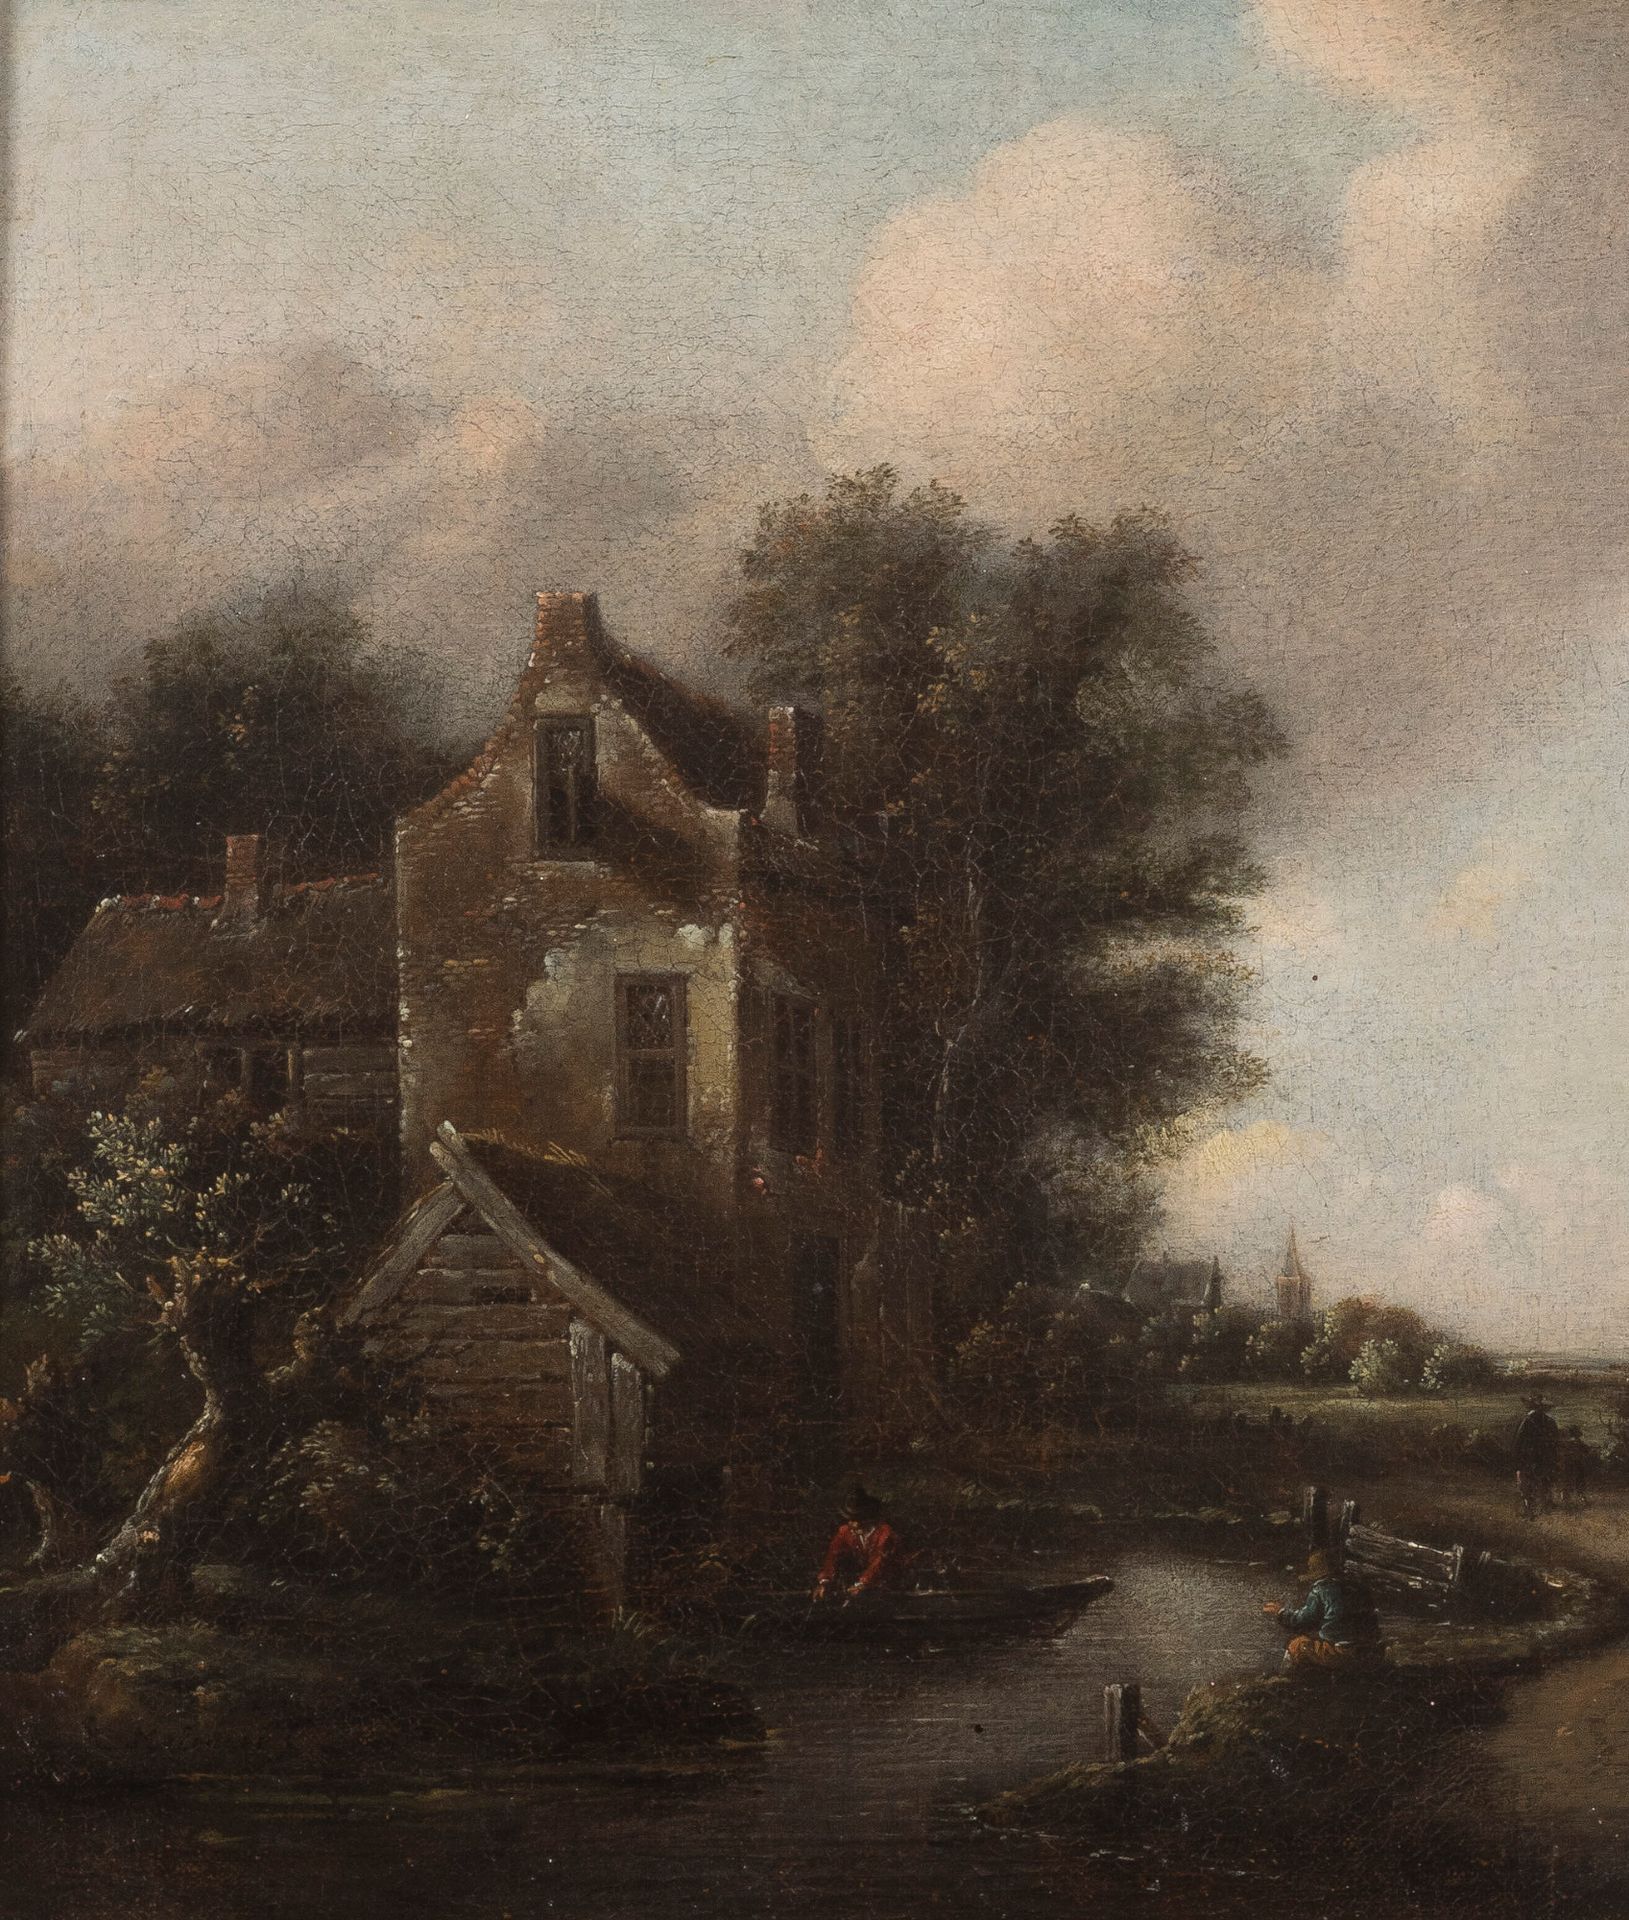 Klaes MOLENAER (1630-1676) 
风景
布面油画。
左下角签名。
带框。
佳士得拍卖
36 x 31 cm